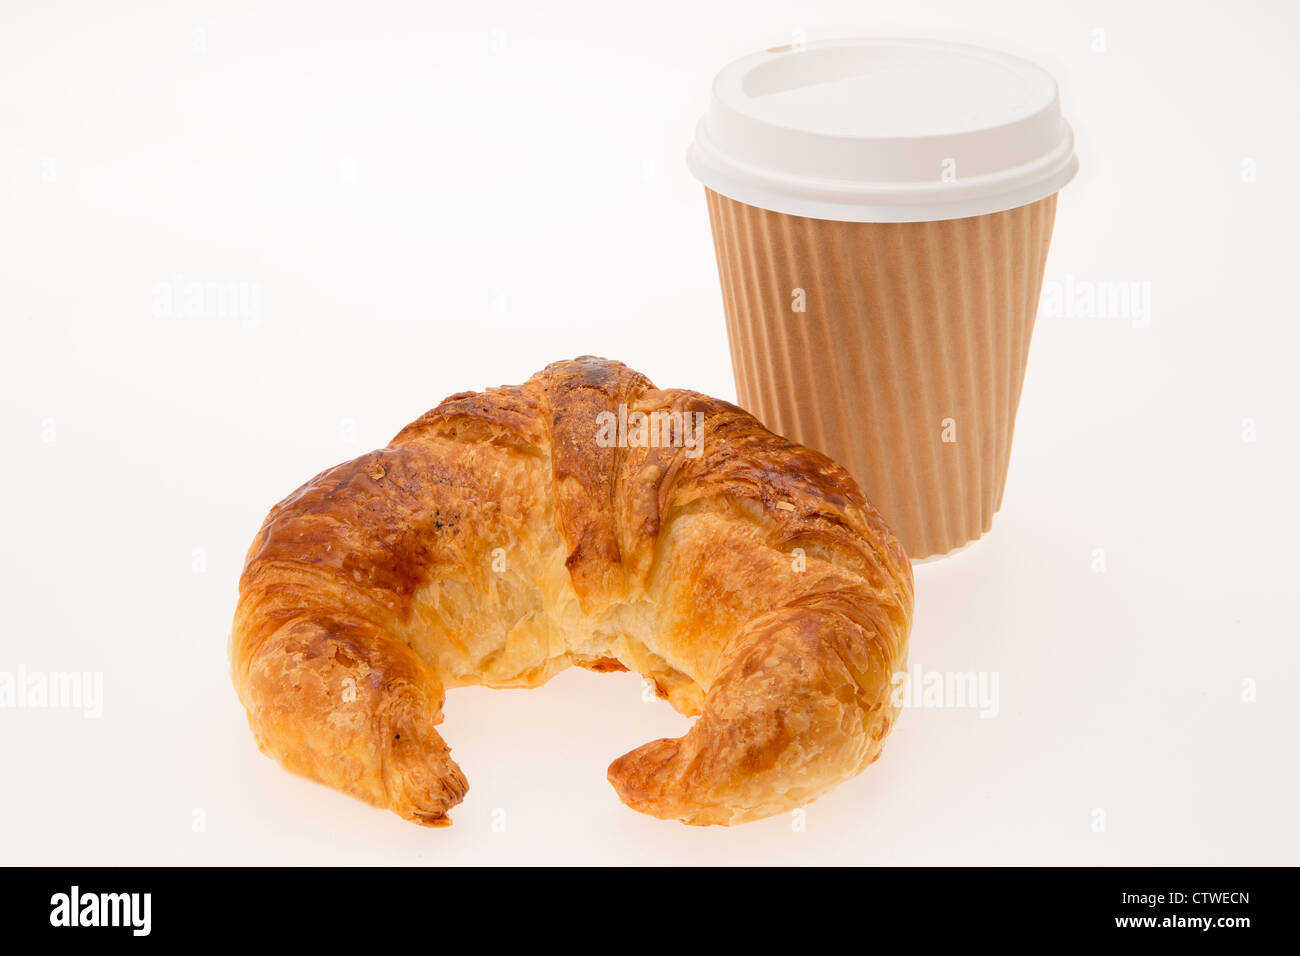 A estrarre la prima colazione consiste di un cornetto e un caffè in una tazza monouso - studio shot con uno sfondo bianco Foto Stock